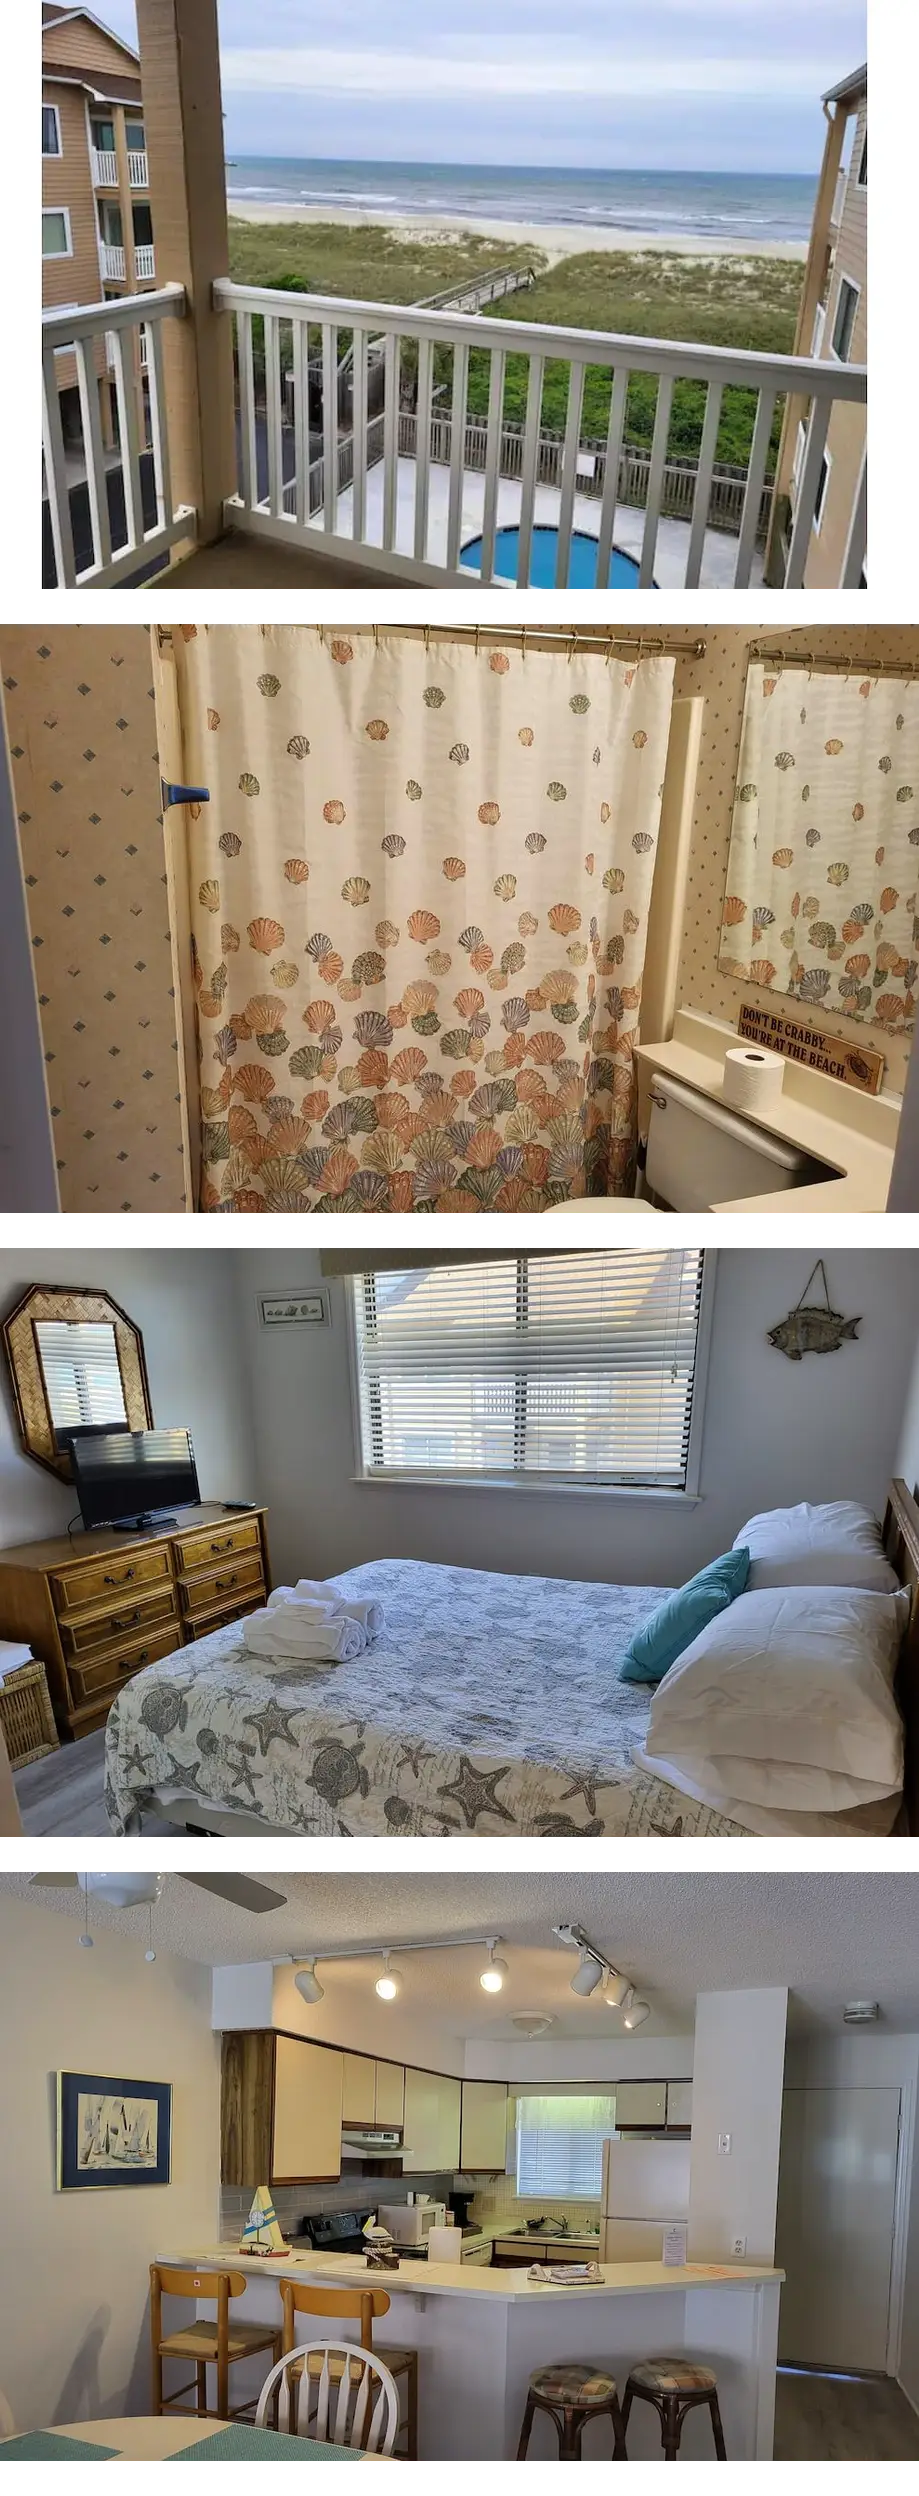 2 Bedroom Condo - Vacation rental home in Carolina Beach, NC